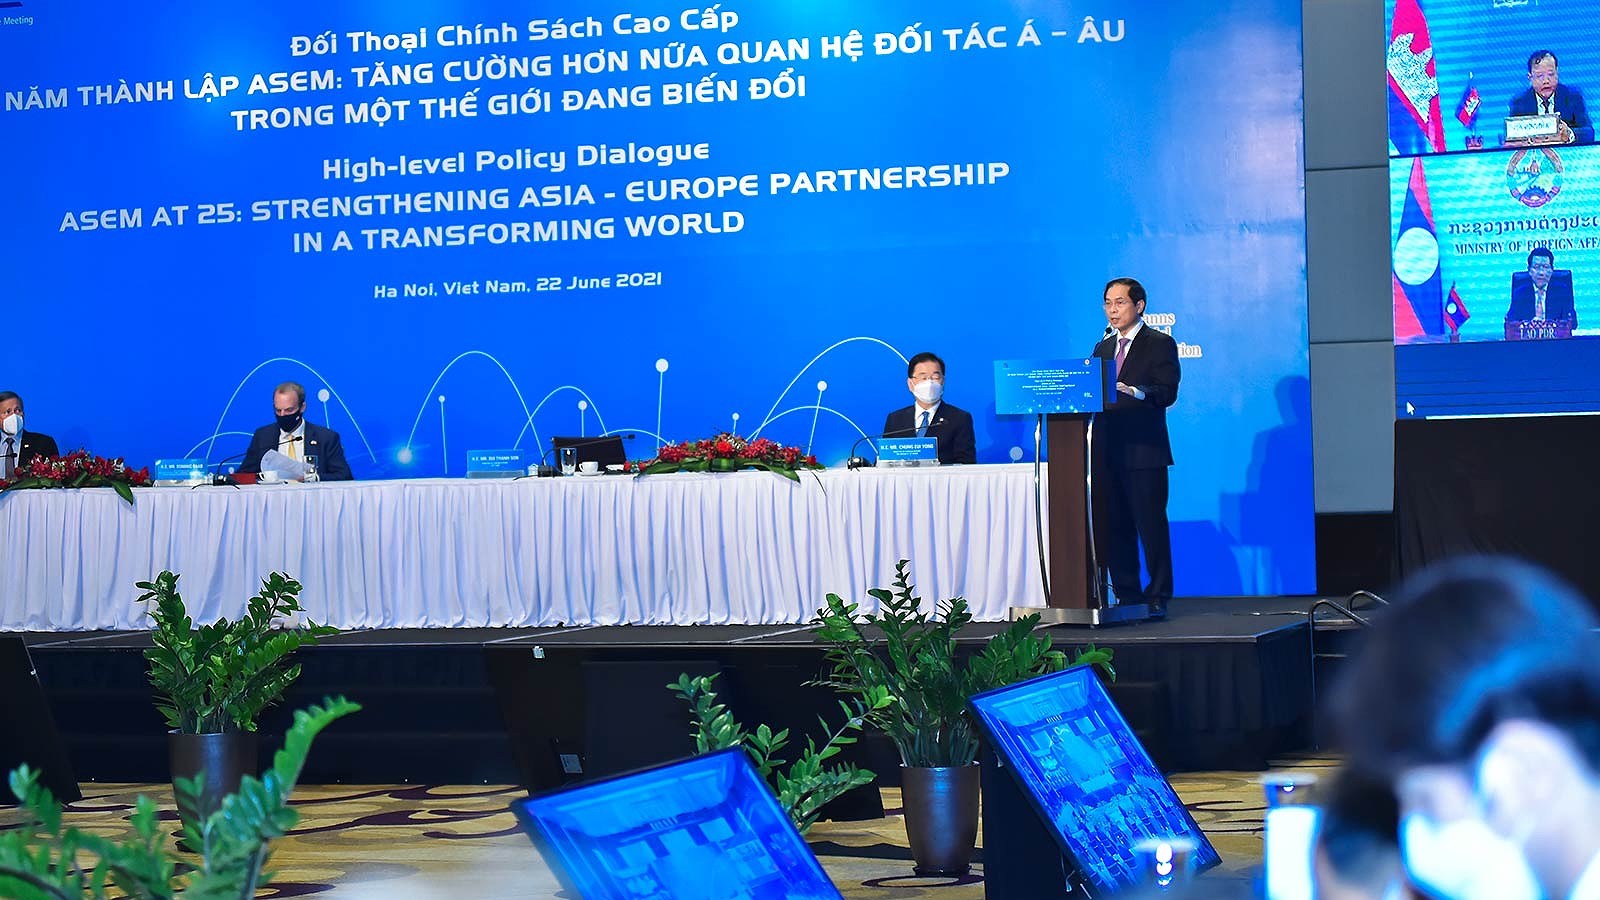 Политическии диалог АСЕМ - «25-я годовщина АСЕМ: укрепляя партнерство между Азиеи и Европои в трансформирующемся мире» hinh anh 2